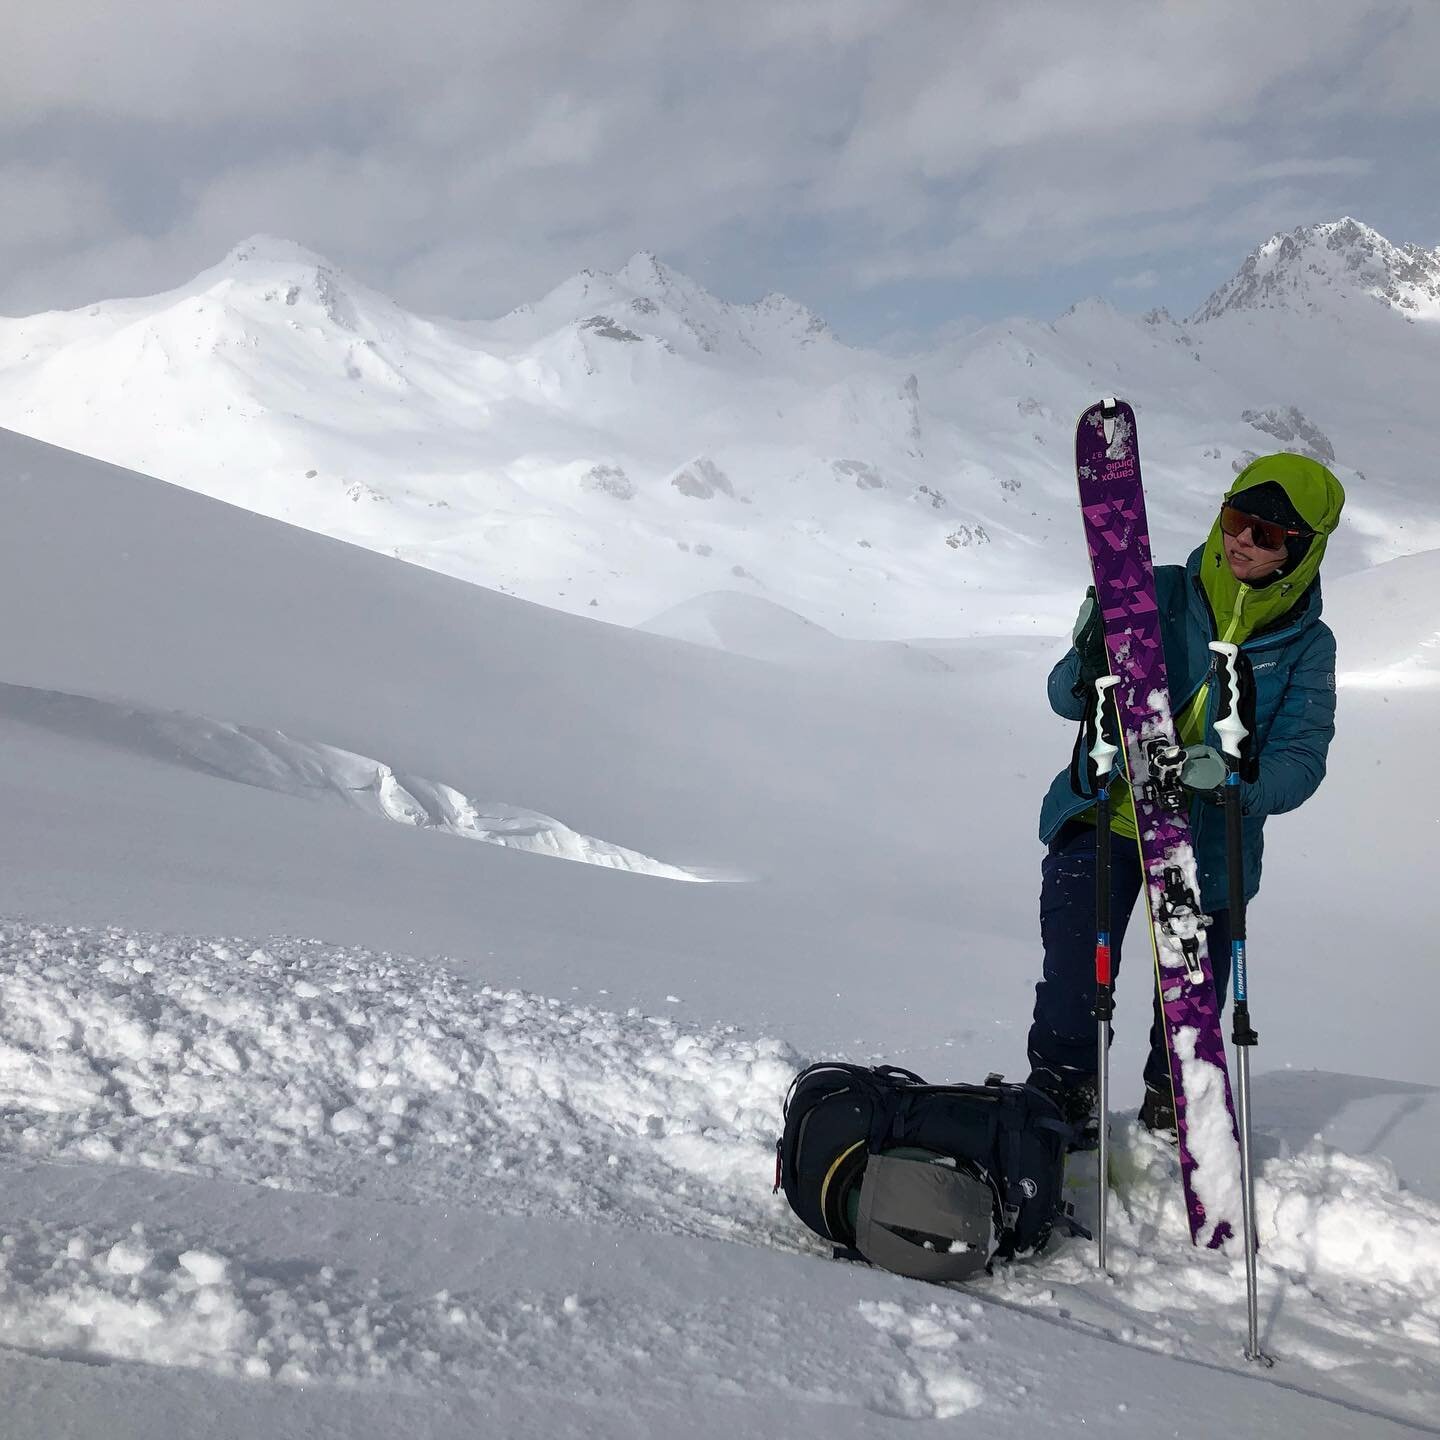 🎿 MEMORIES 🎿
Ischgl M&auml;rz 2020...wer h&auml;tte gedacht, was danach passieren w&uuml;rde...schee war&rsquo;s! 🤍

📸 @skimo_thiemo 

#skitouring #skiing #winterlove #missingthis #skimountaineering #bergliebe #winterliebe #freeriding #heidelberg